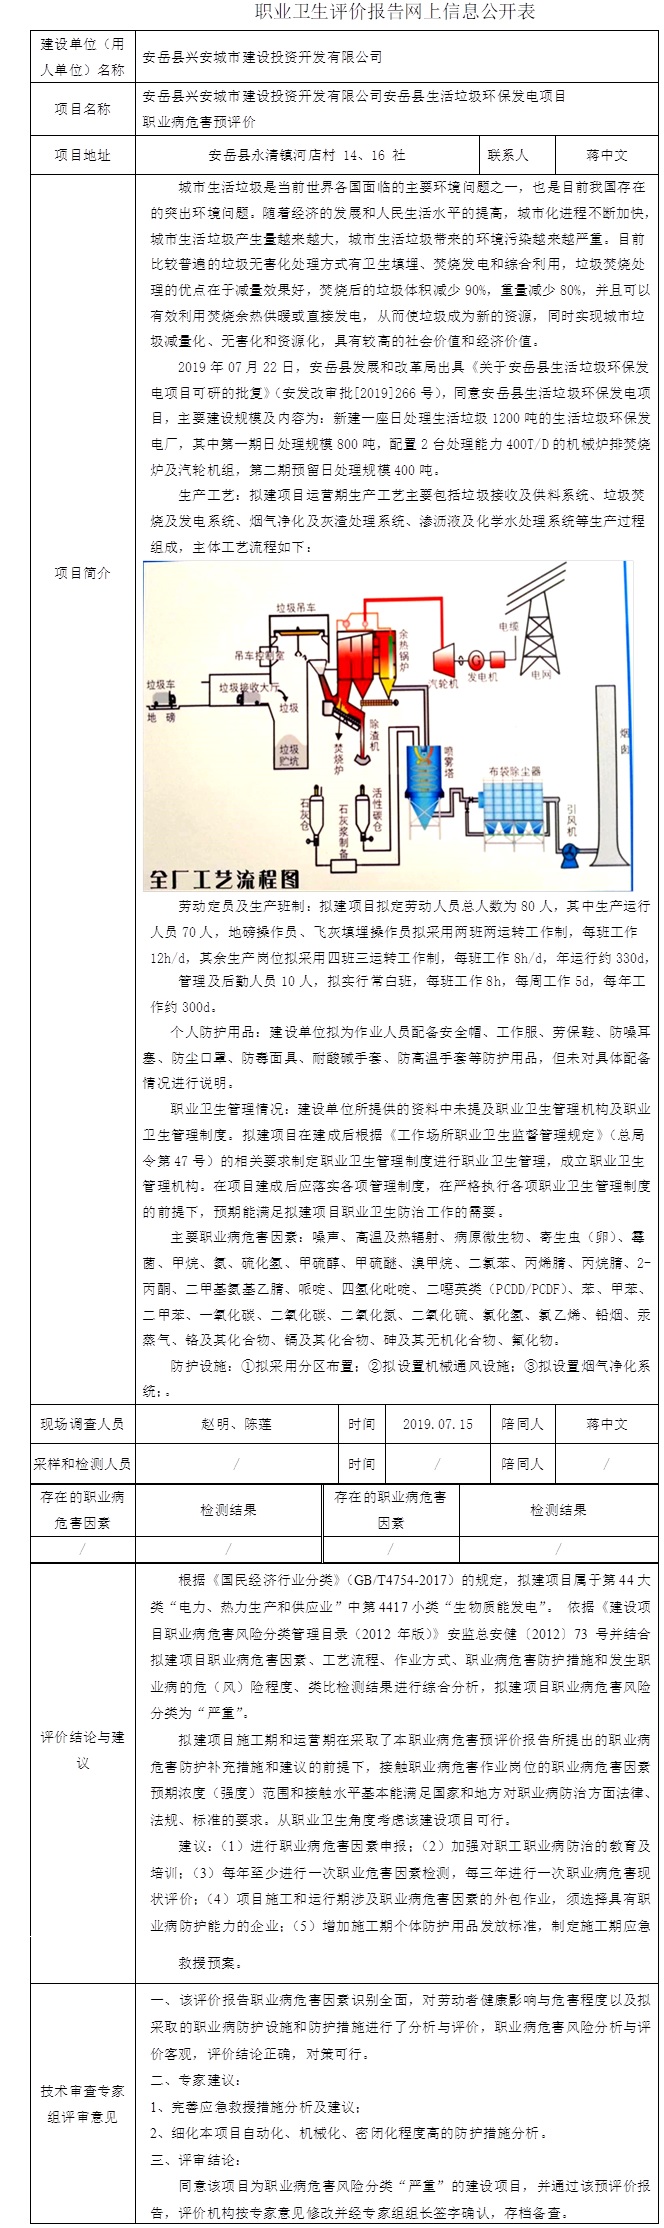 安岳县兴安城市建设投资开发有限公司安岳县生活垃圾环保发电项目职业病危害预评价.jpg